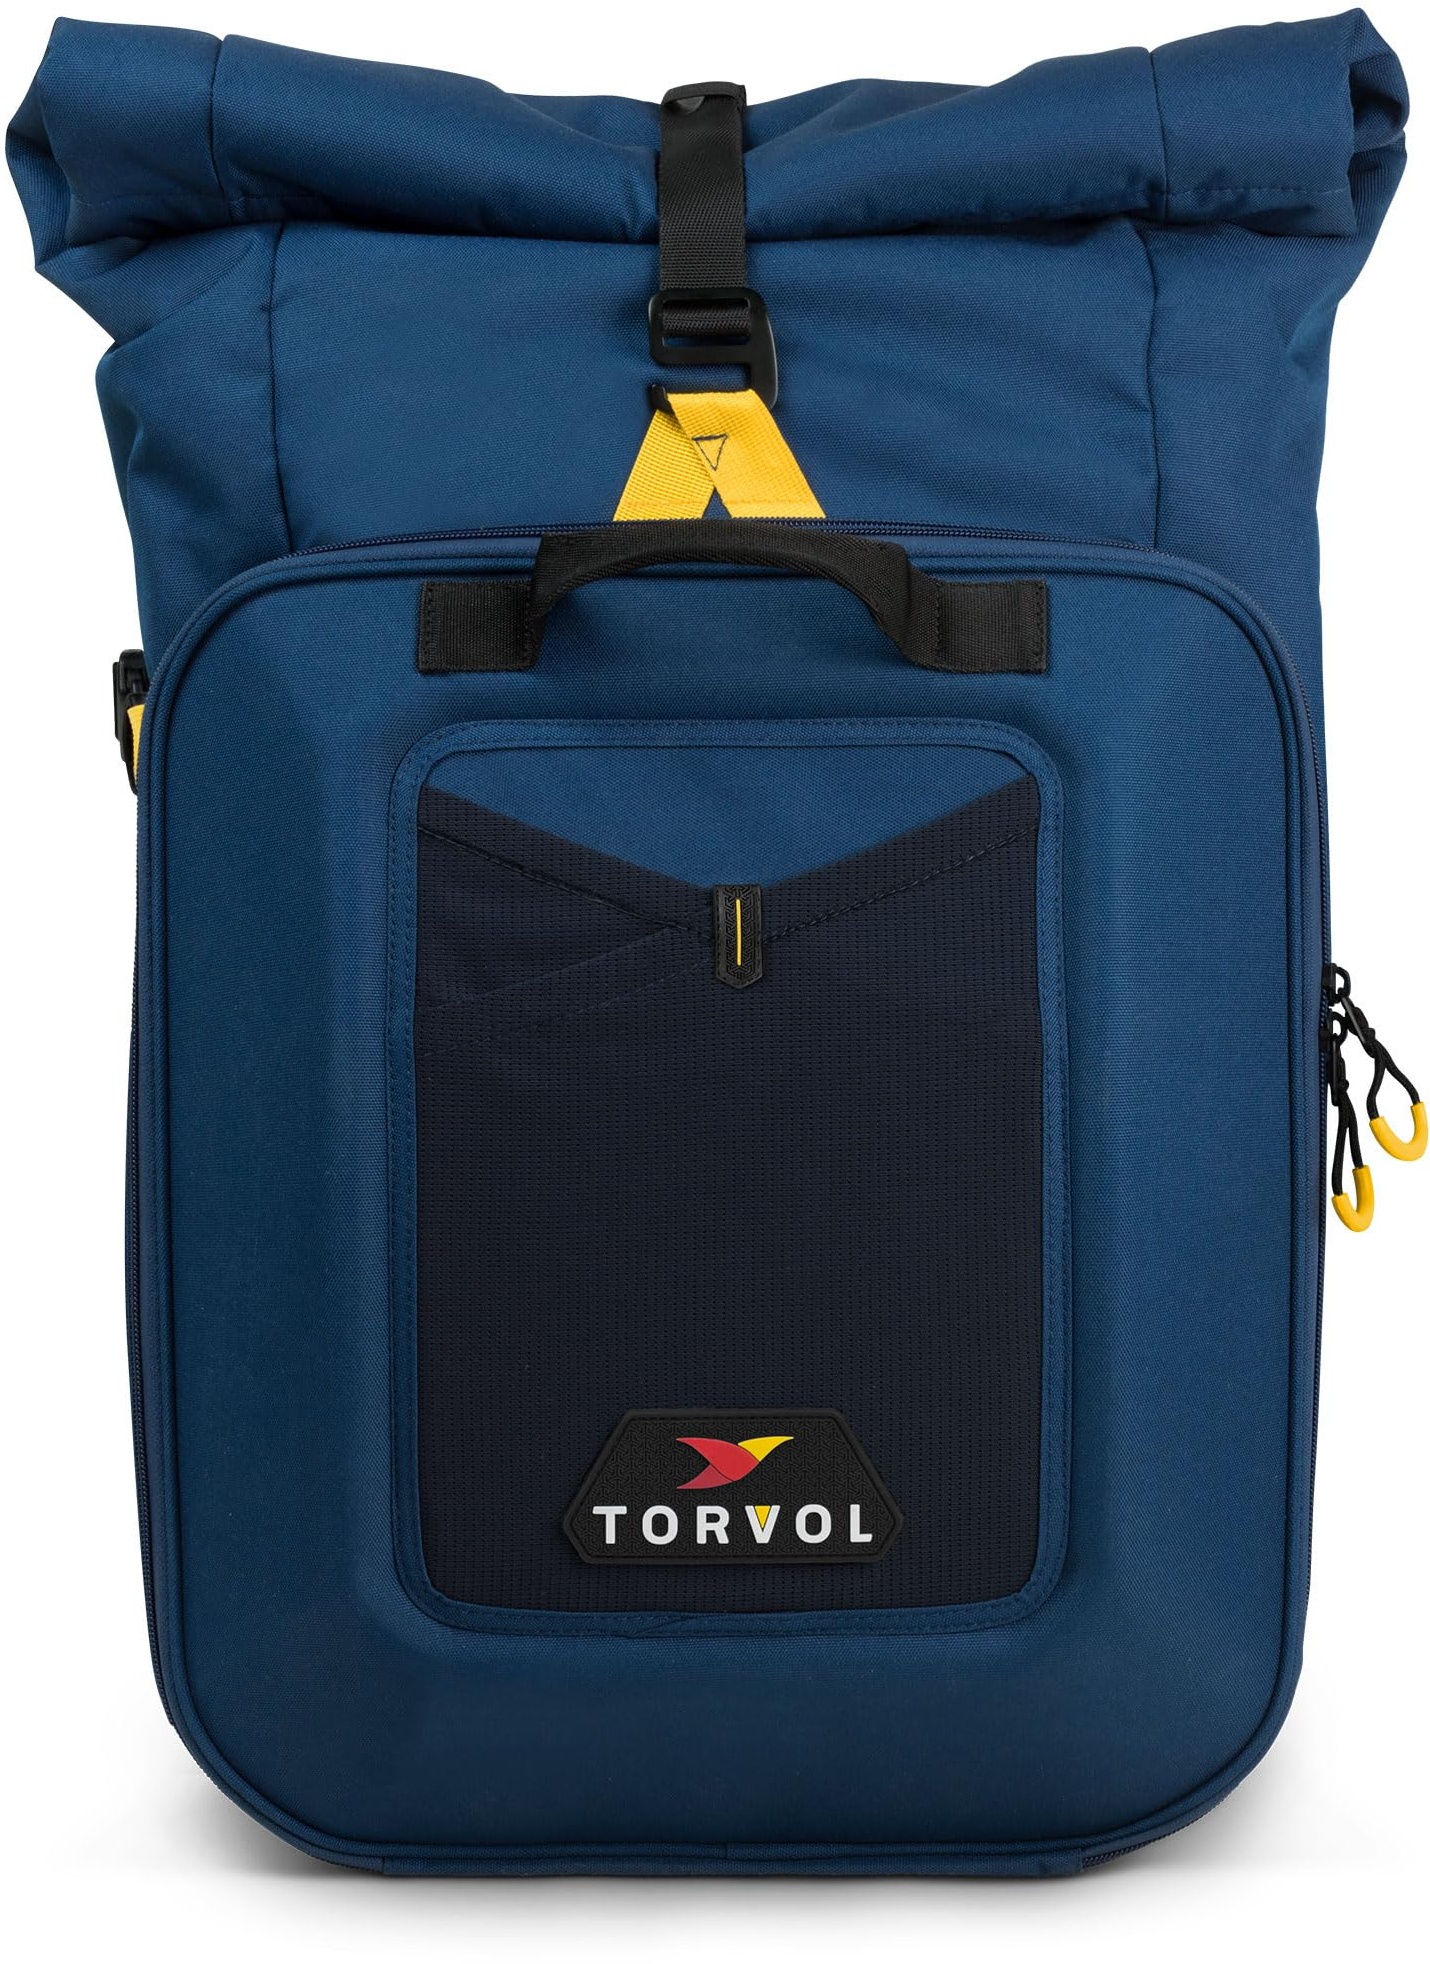 Torvol Rucksack starr und kompakt mit Mehreren Taschen, Drohne Adventure Backpack für große Drohne wie Phantom Aber auch Jede Drohne DJI/Parrot/Autel/Yuneec/Hubsan